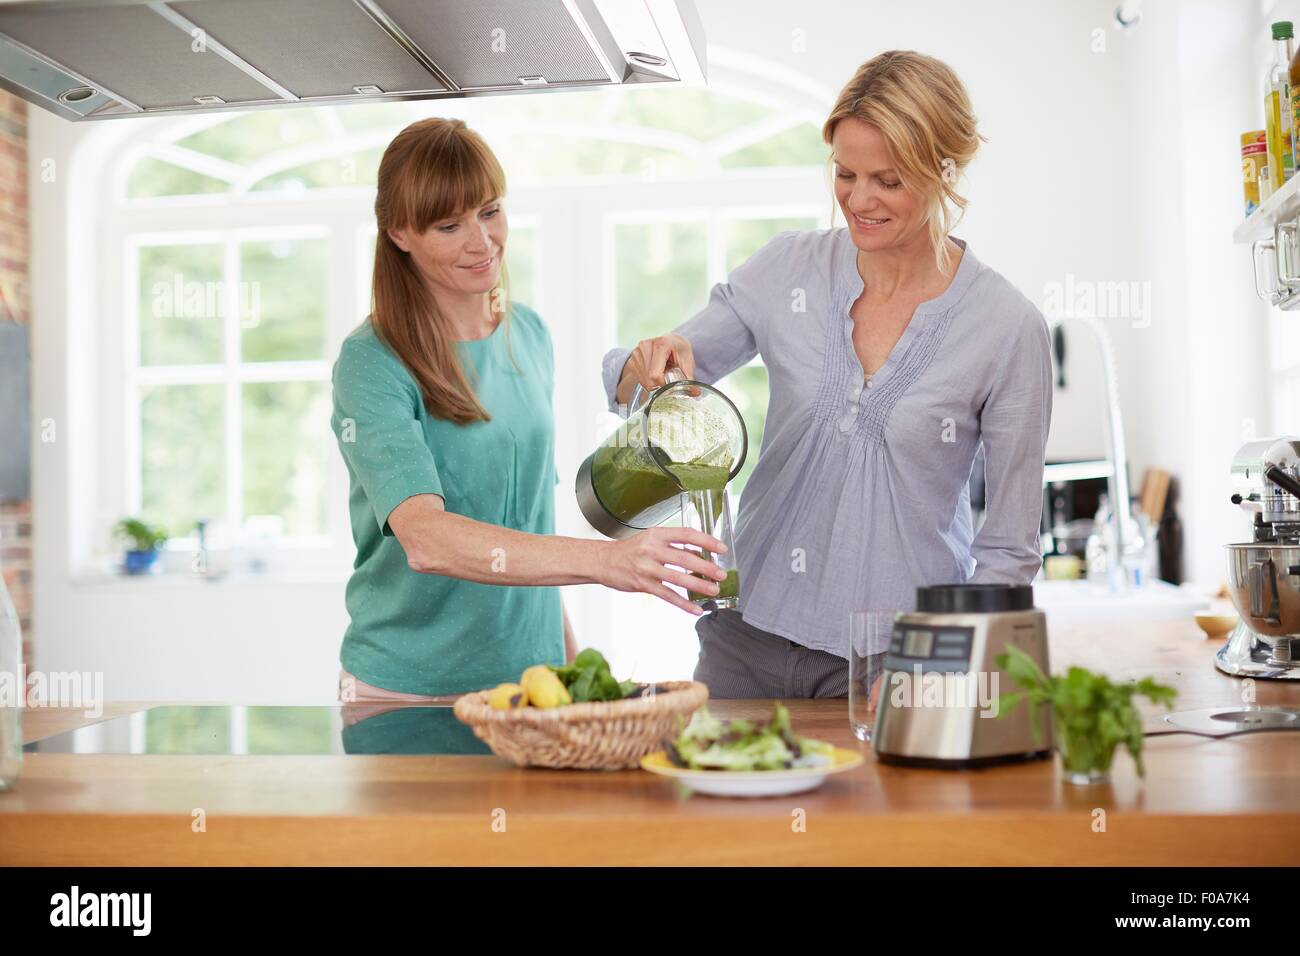 Les femmes végétaliennes vert potable dans la cuisine smoothie Banque D'Images